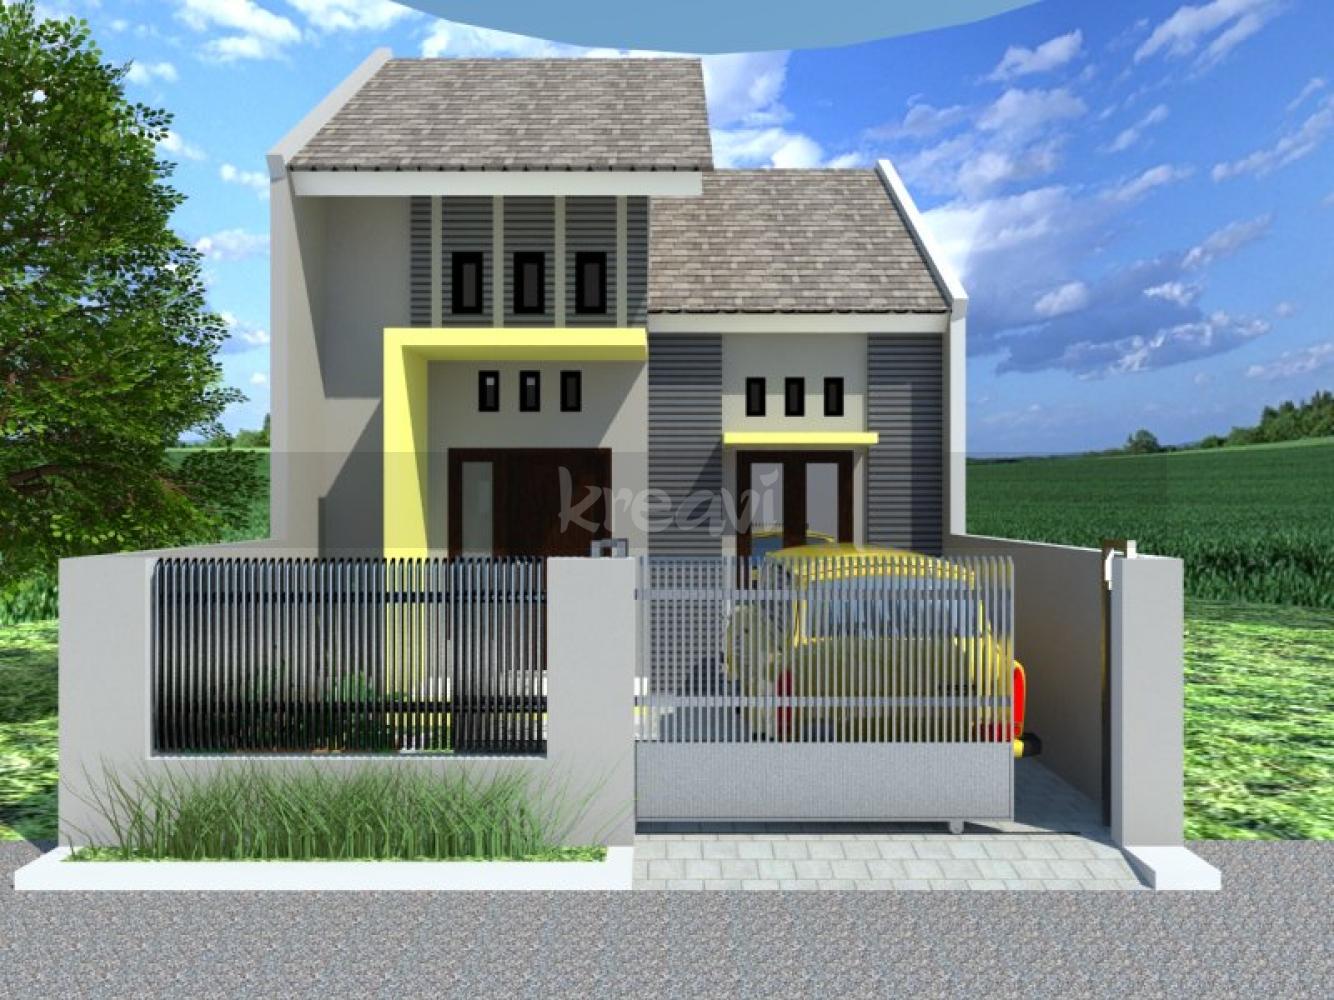 Desain Rumah Minimalis Terbaru 2013 | Haus Tecno